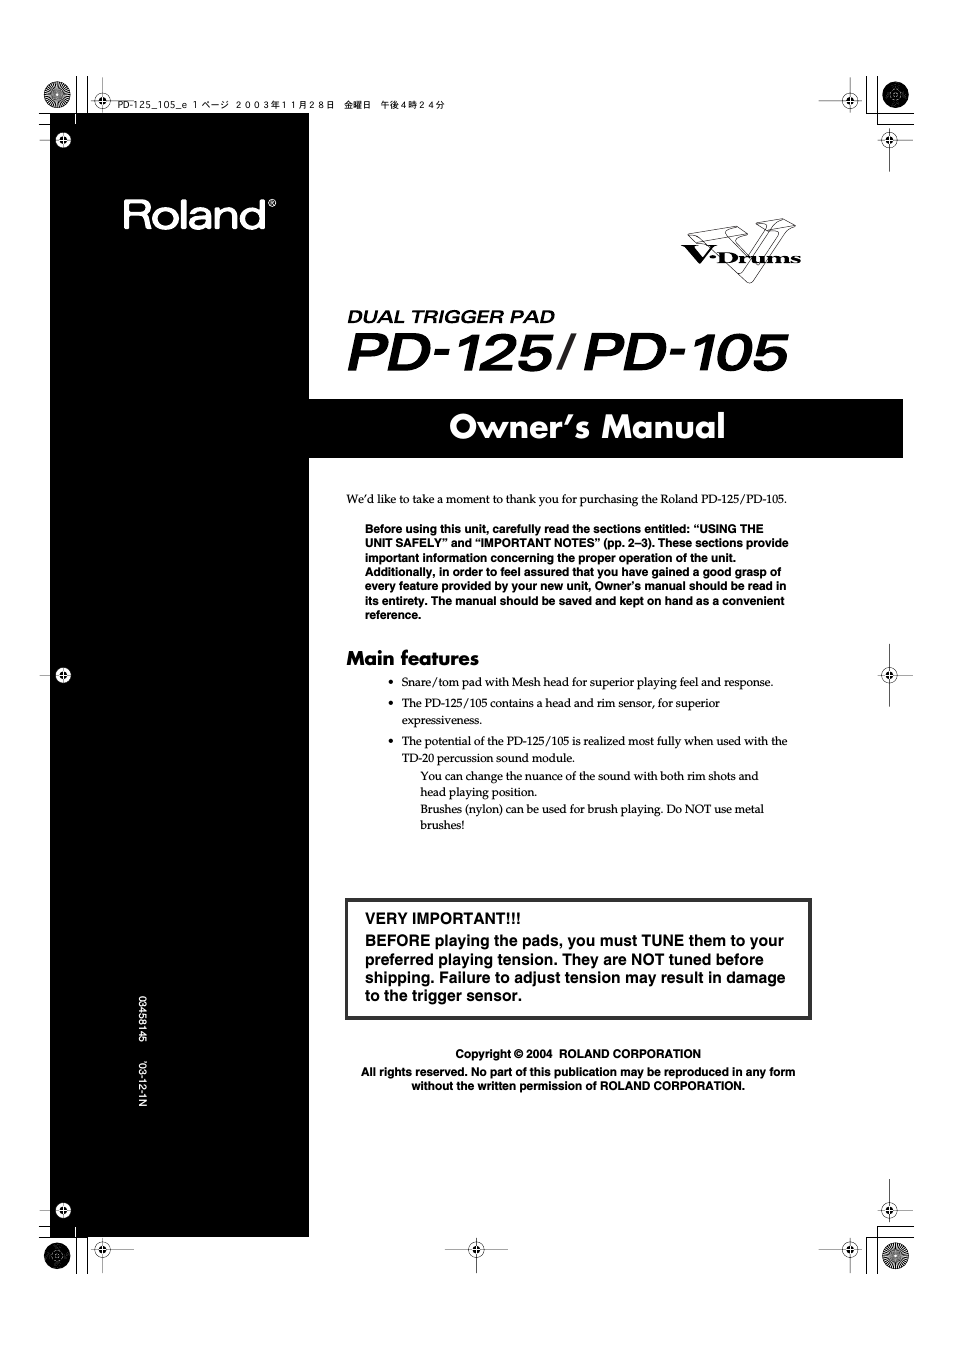 PD-125/PD-105